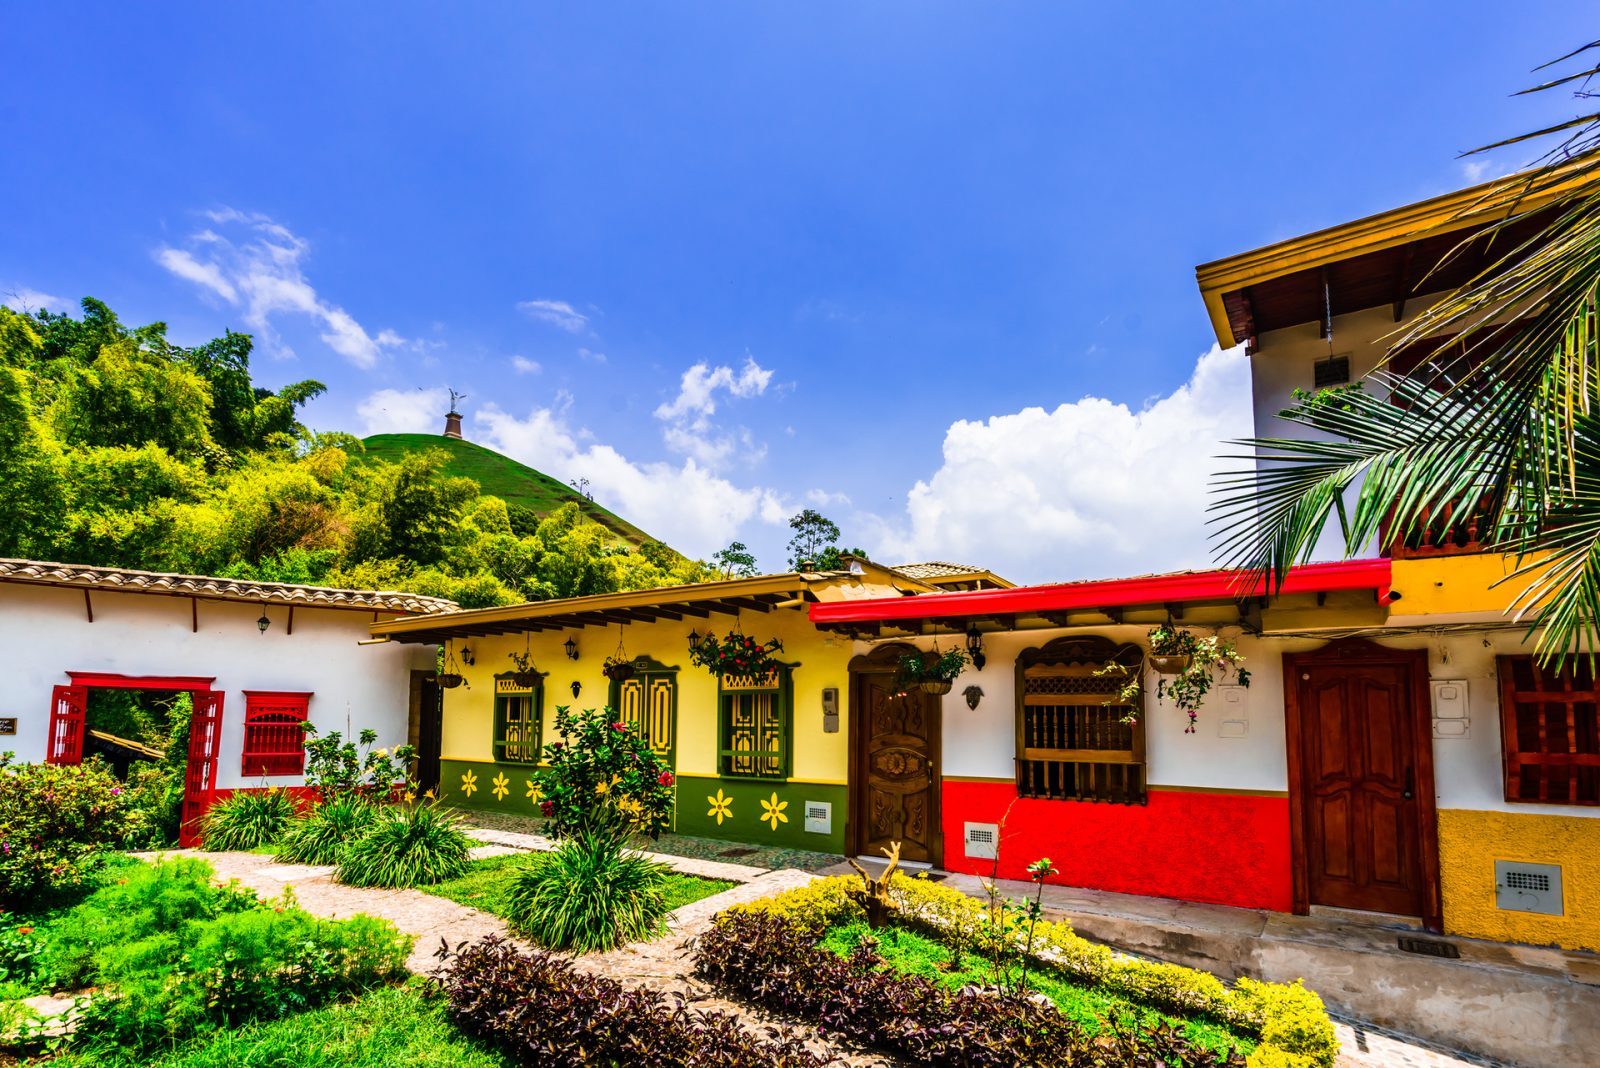 10 удивительных мест Колумбии
кафетерий